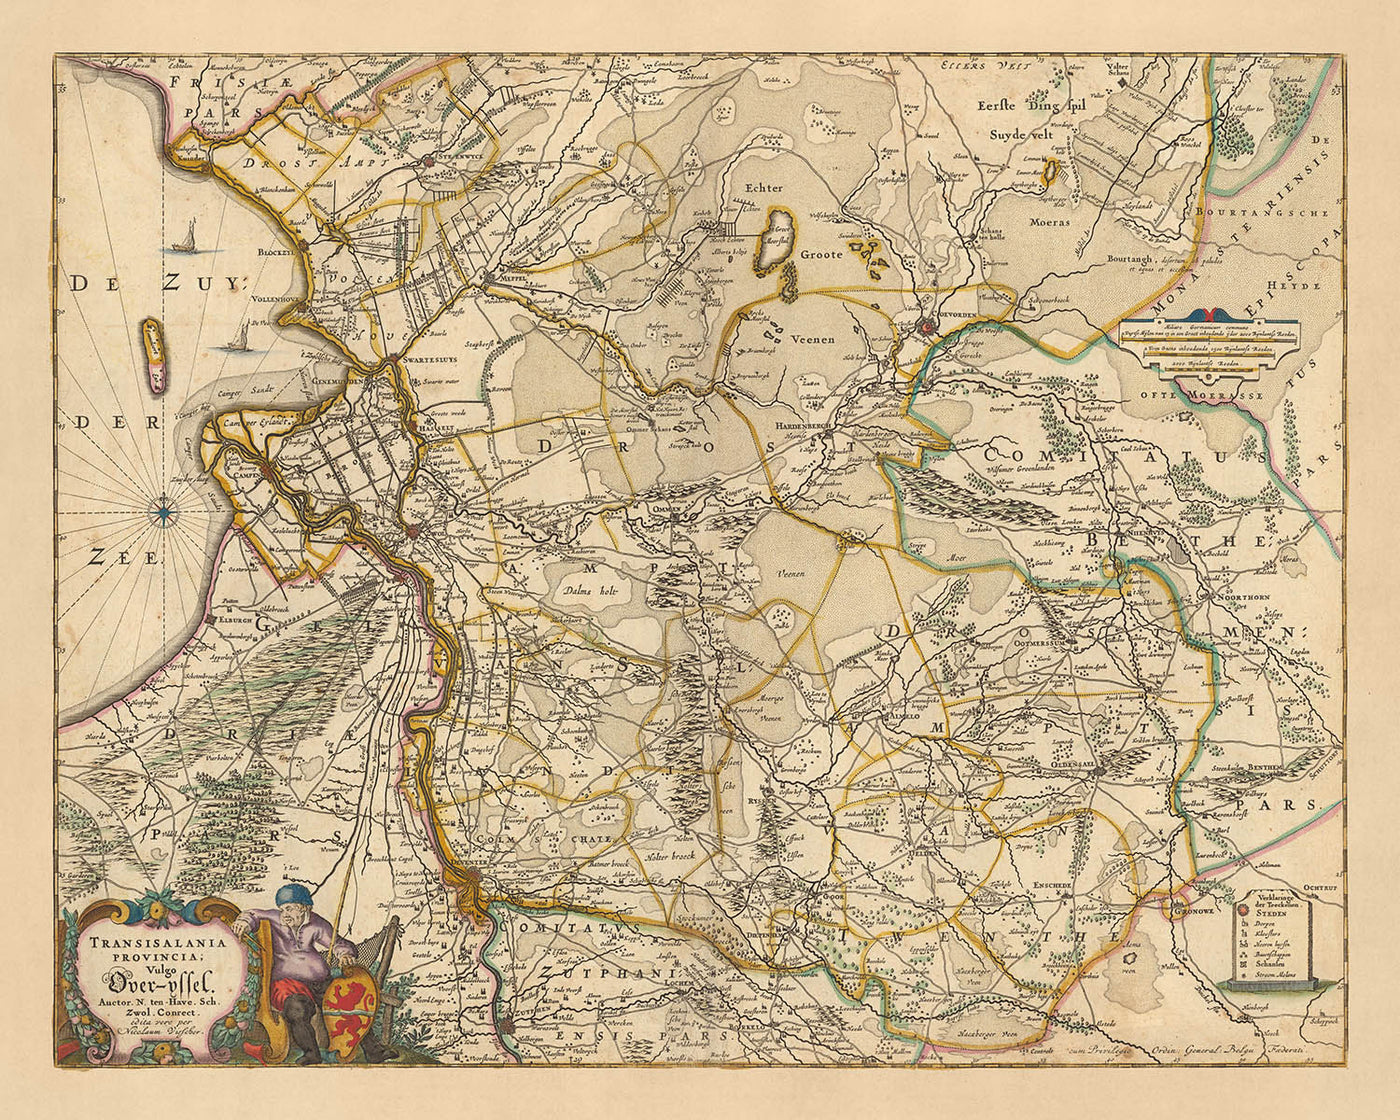 Old Map of Overijssel, Netherlands by Visscher, 1690: Zwolle, Kampen, Hengelo, Deventer, Enschede